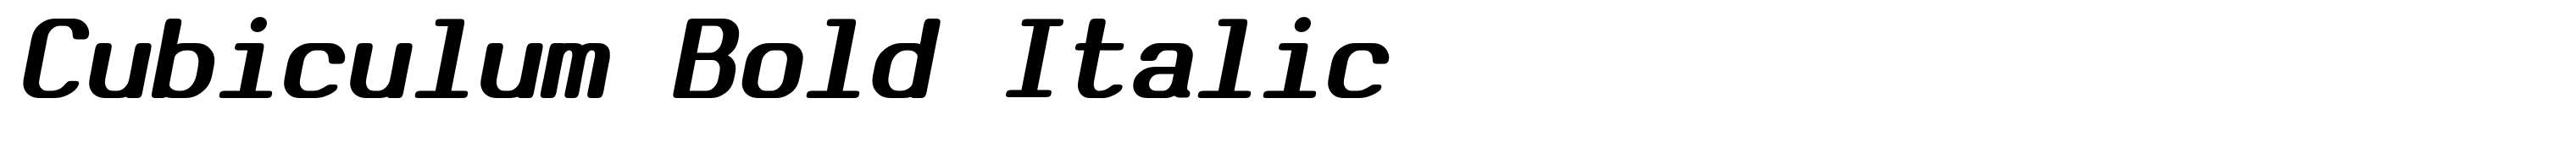 Cubiculum Bold Italic